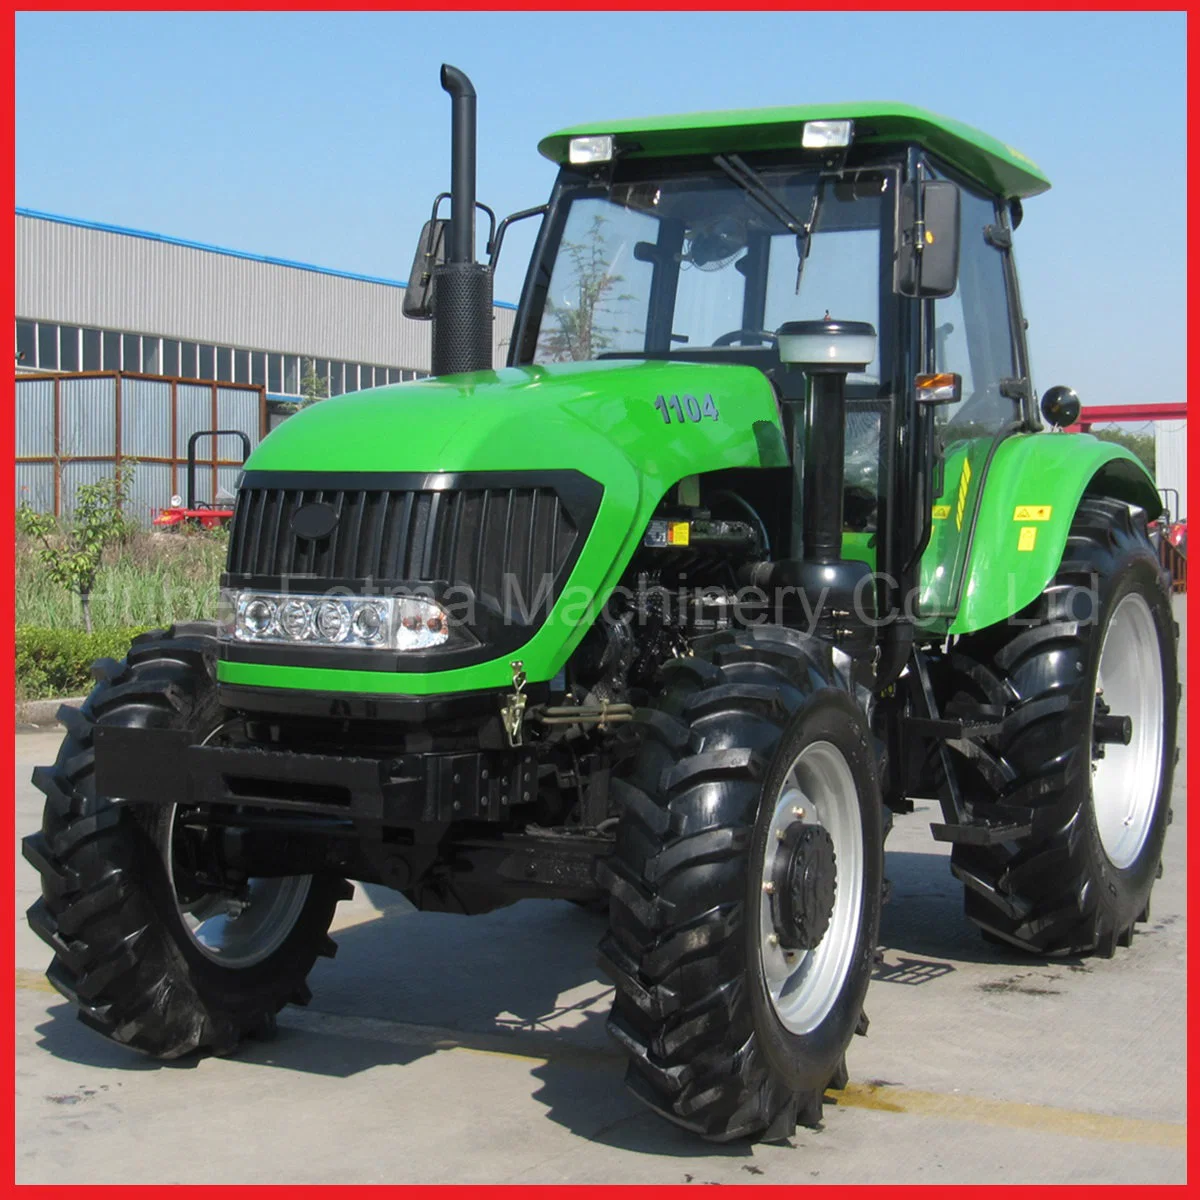 Tractores agrícolas/ cosechadoras/Equipo agrícola implementos agrícolas y maquinaria agrícola